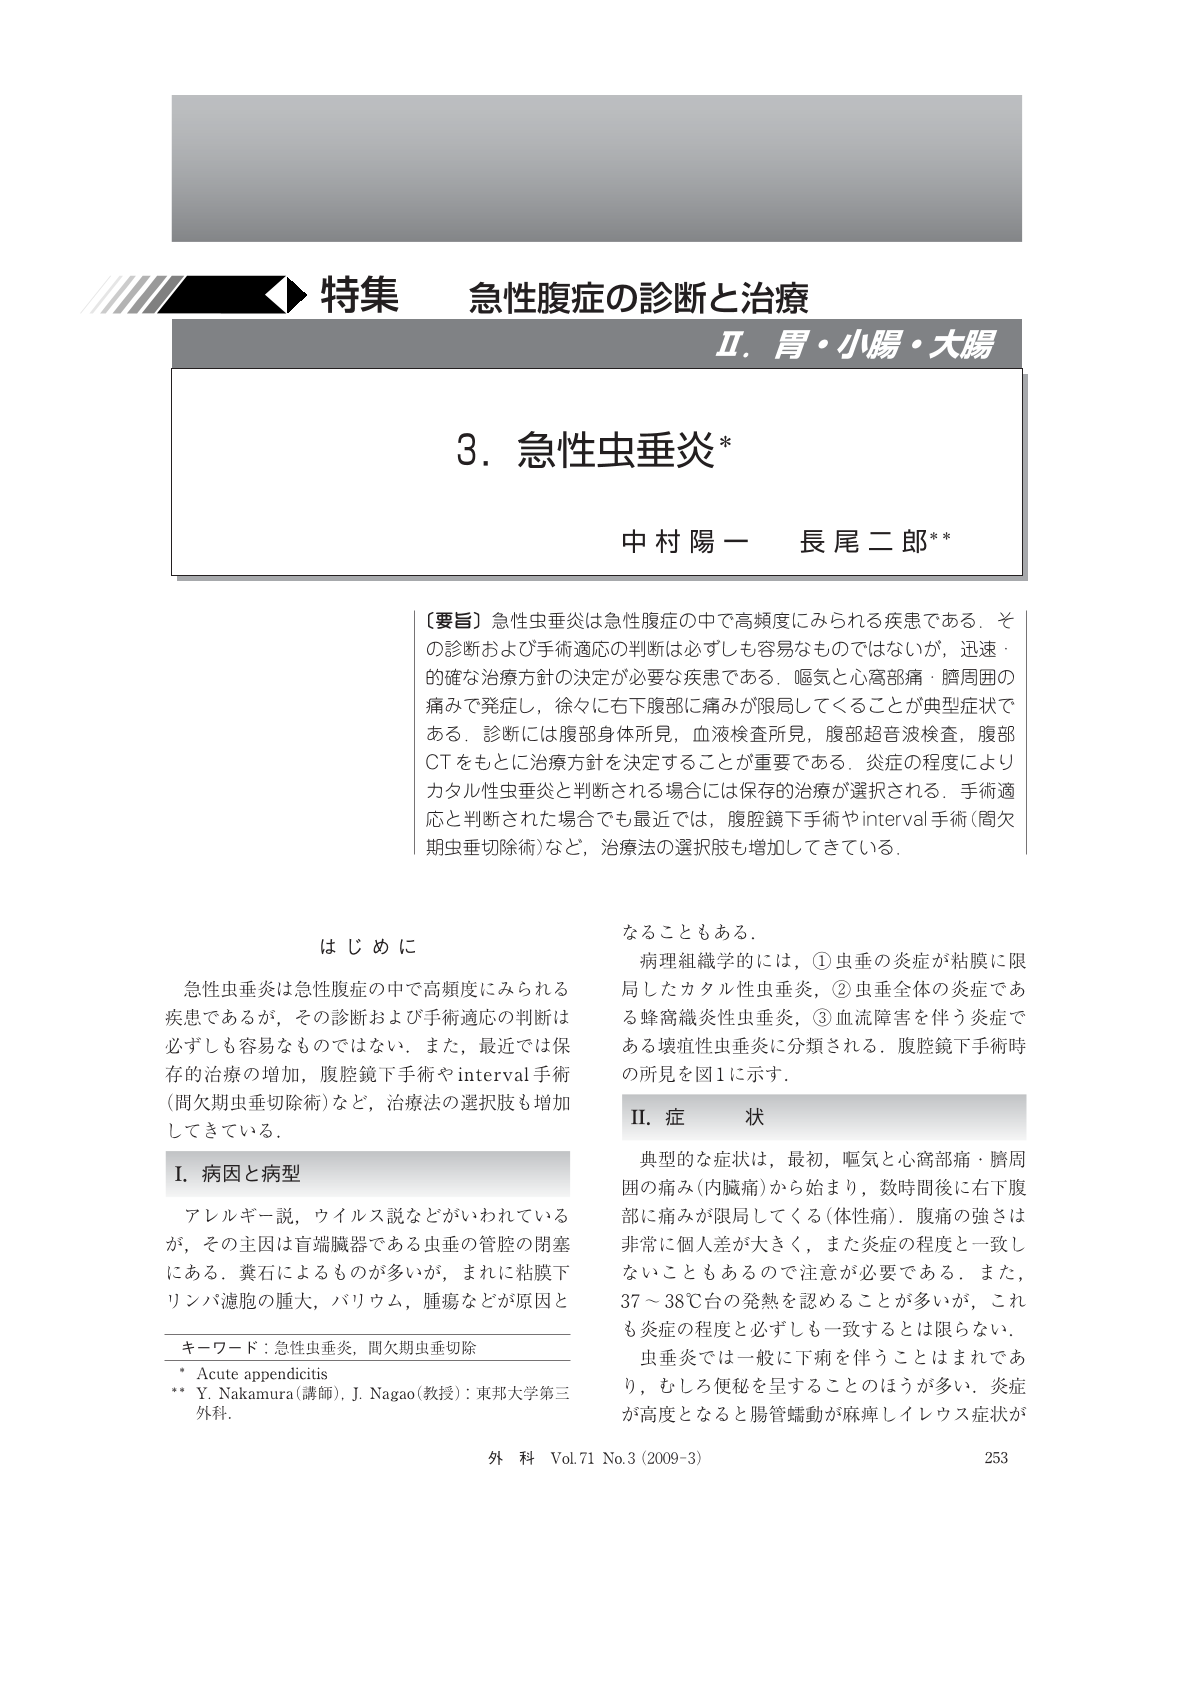 胃 小腸 大腸 急性虫垂炎 臨床雑誌外科 71巻3号 医書 Jp